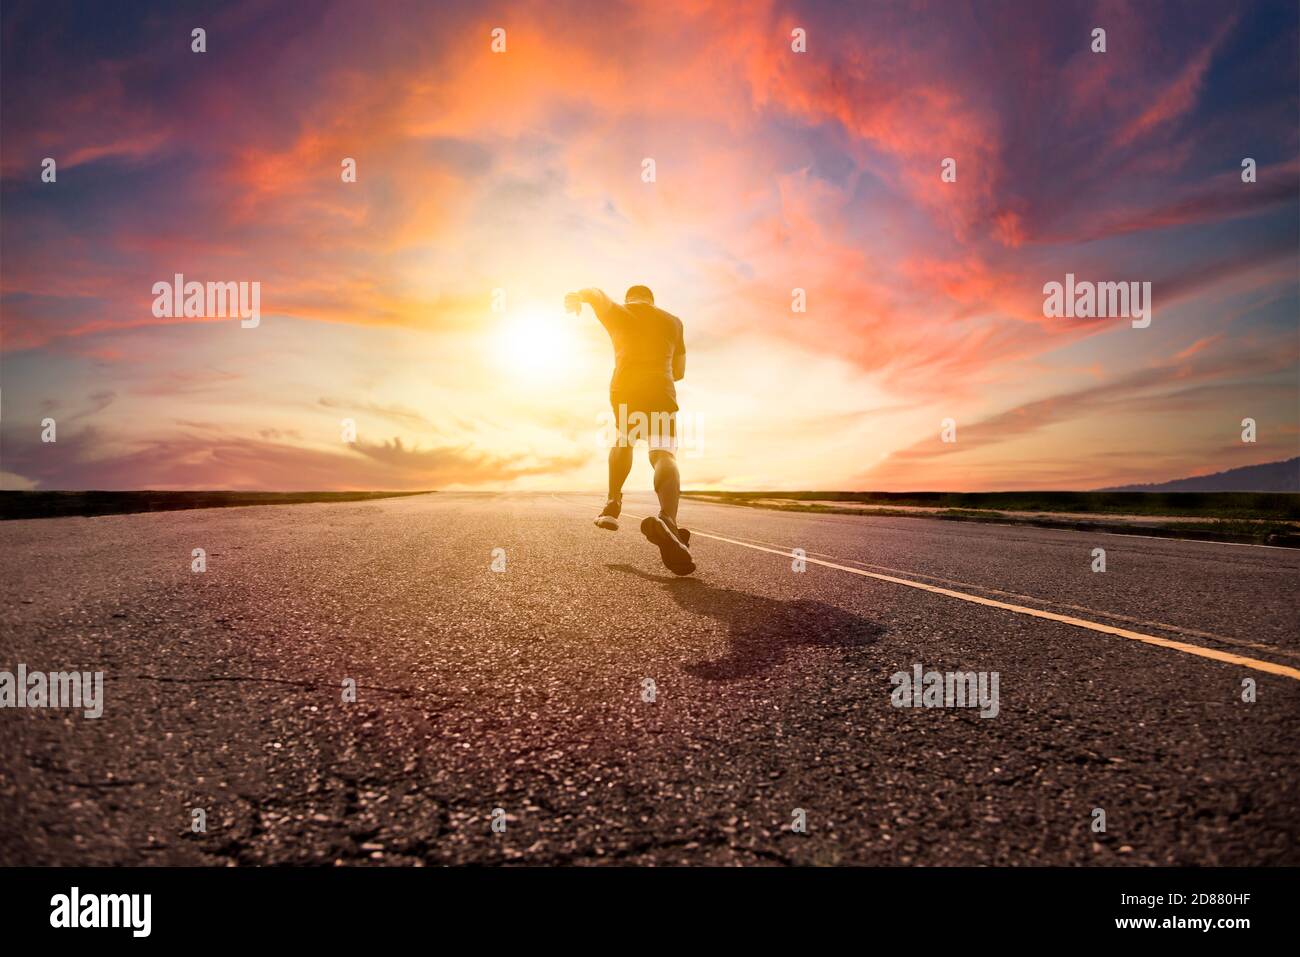 Mann läuft und sprintet auf der Straße mit Sonnenuntergang Hintergrund Stockfoto